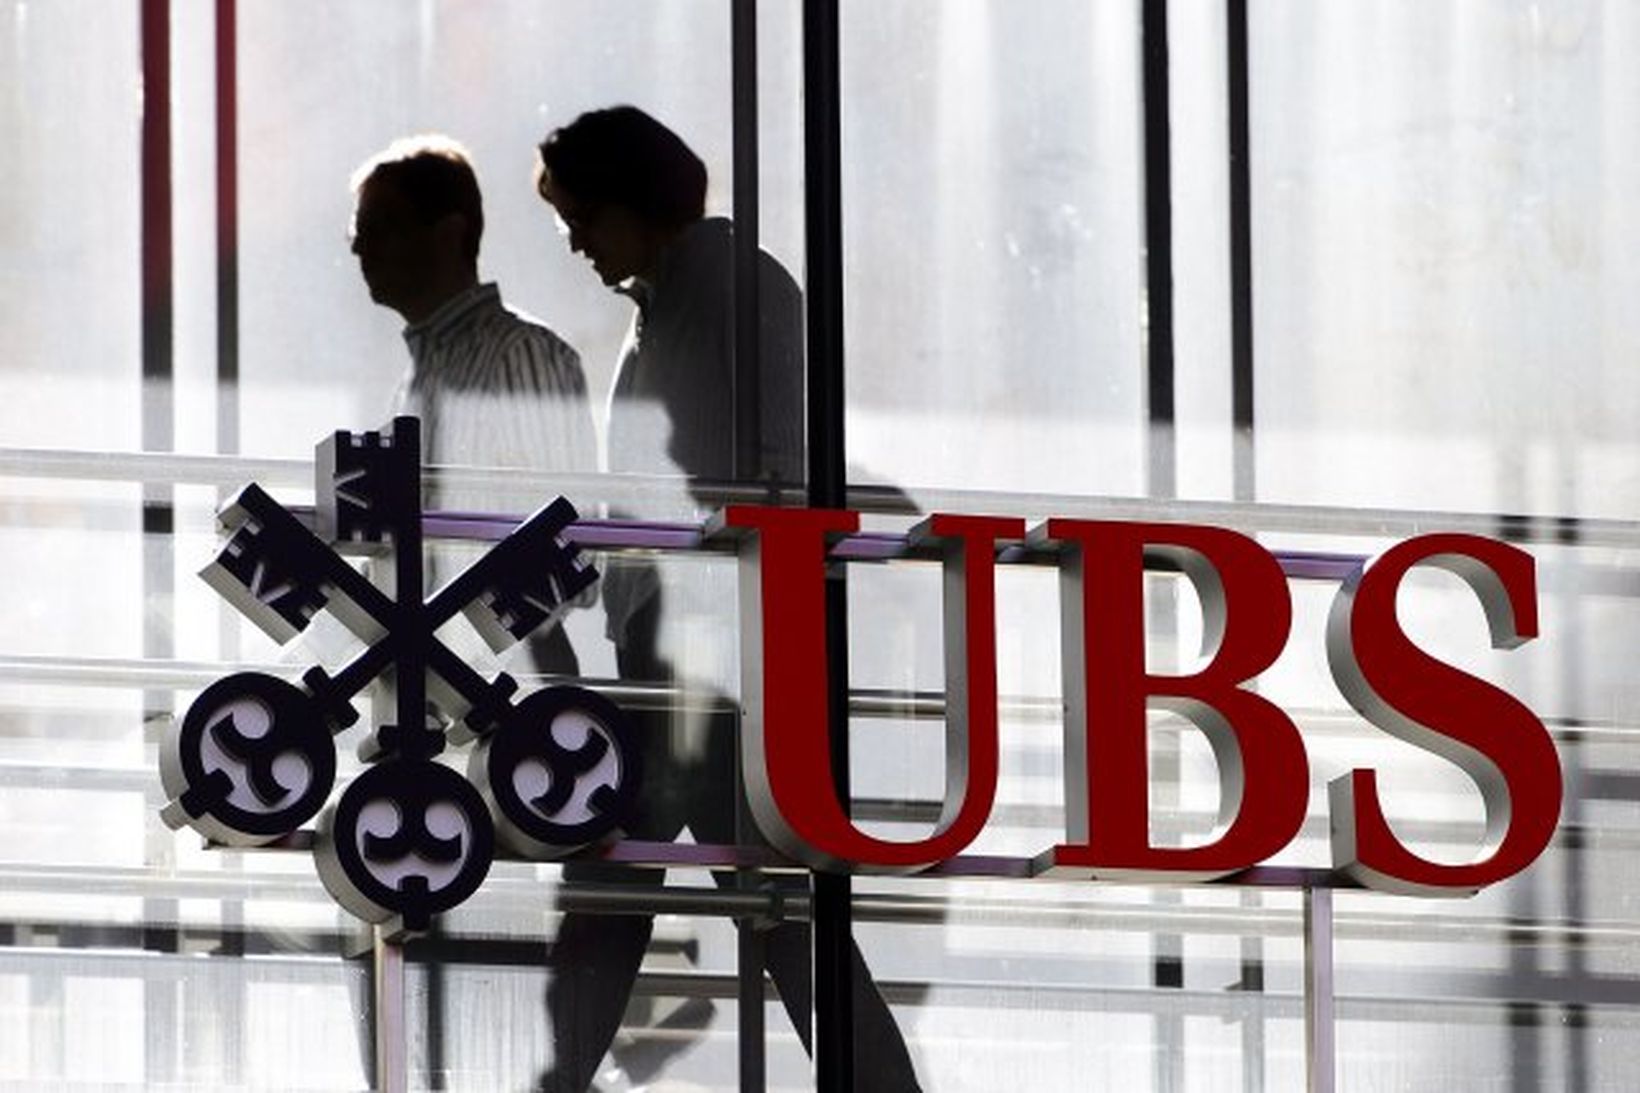 Hayes starfaði meðal annars hjá UBS bankanum.